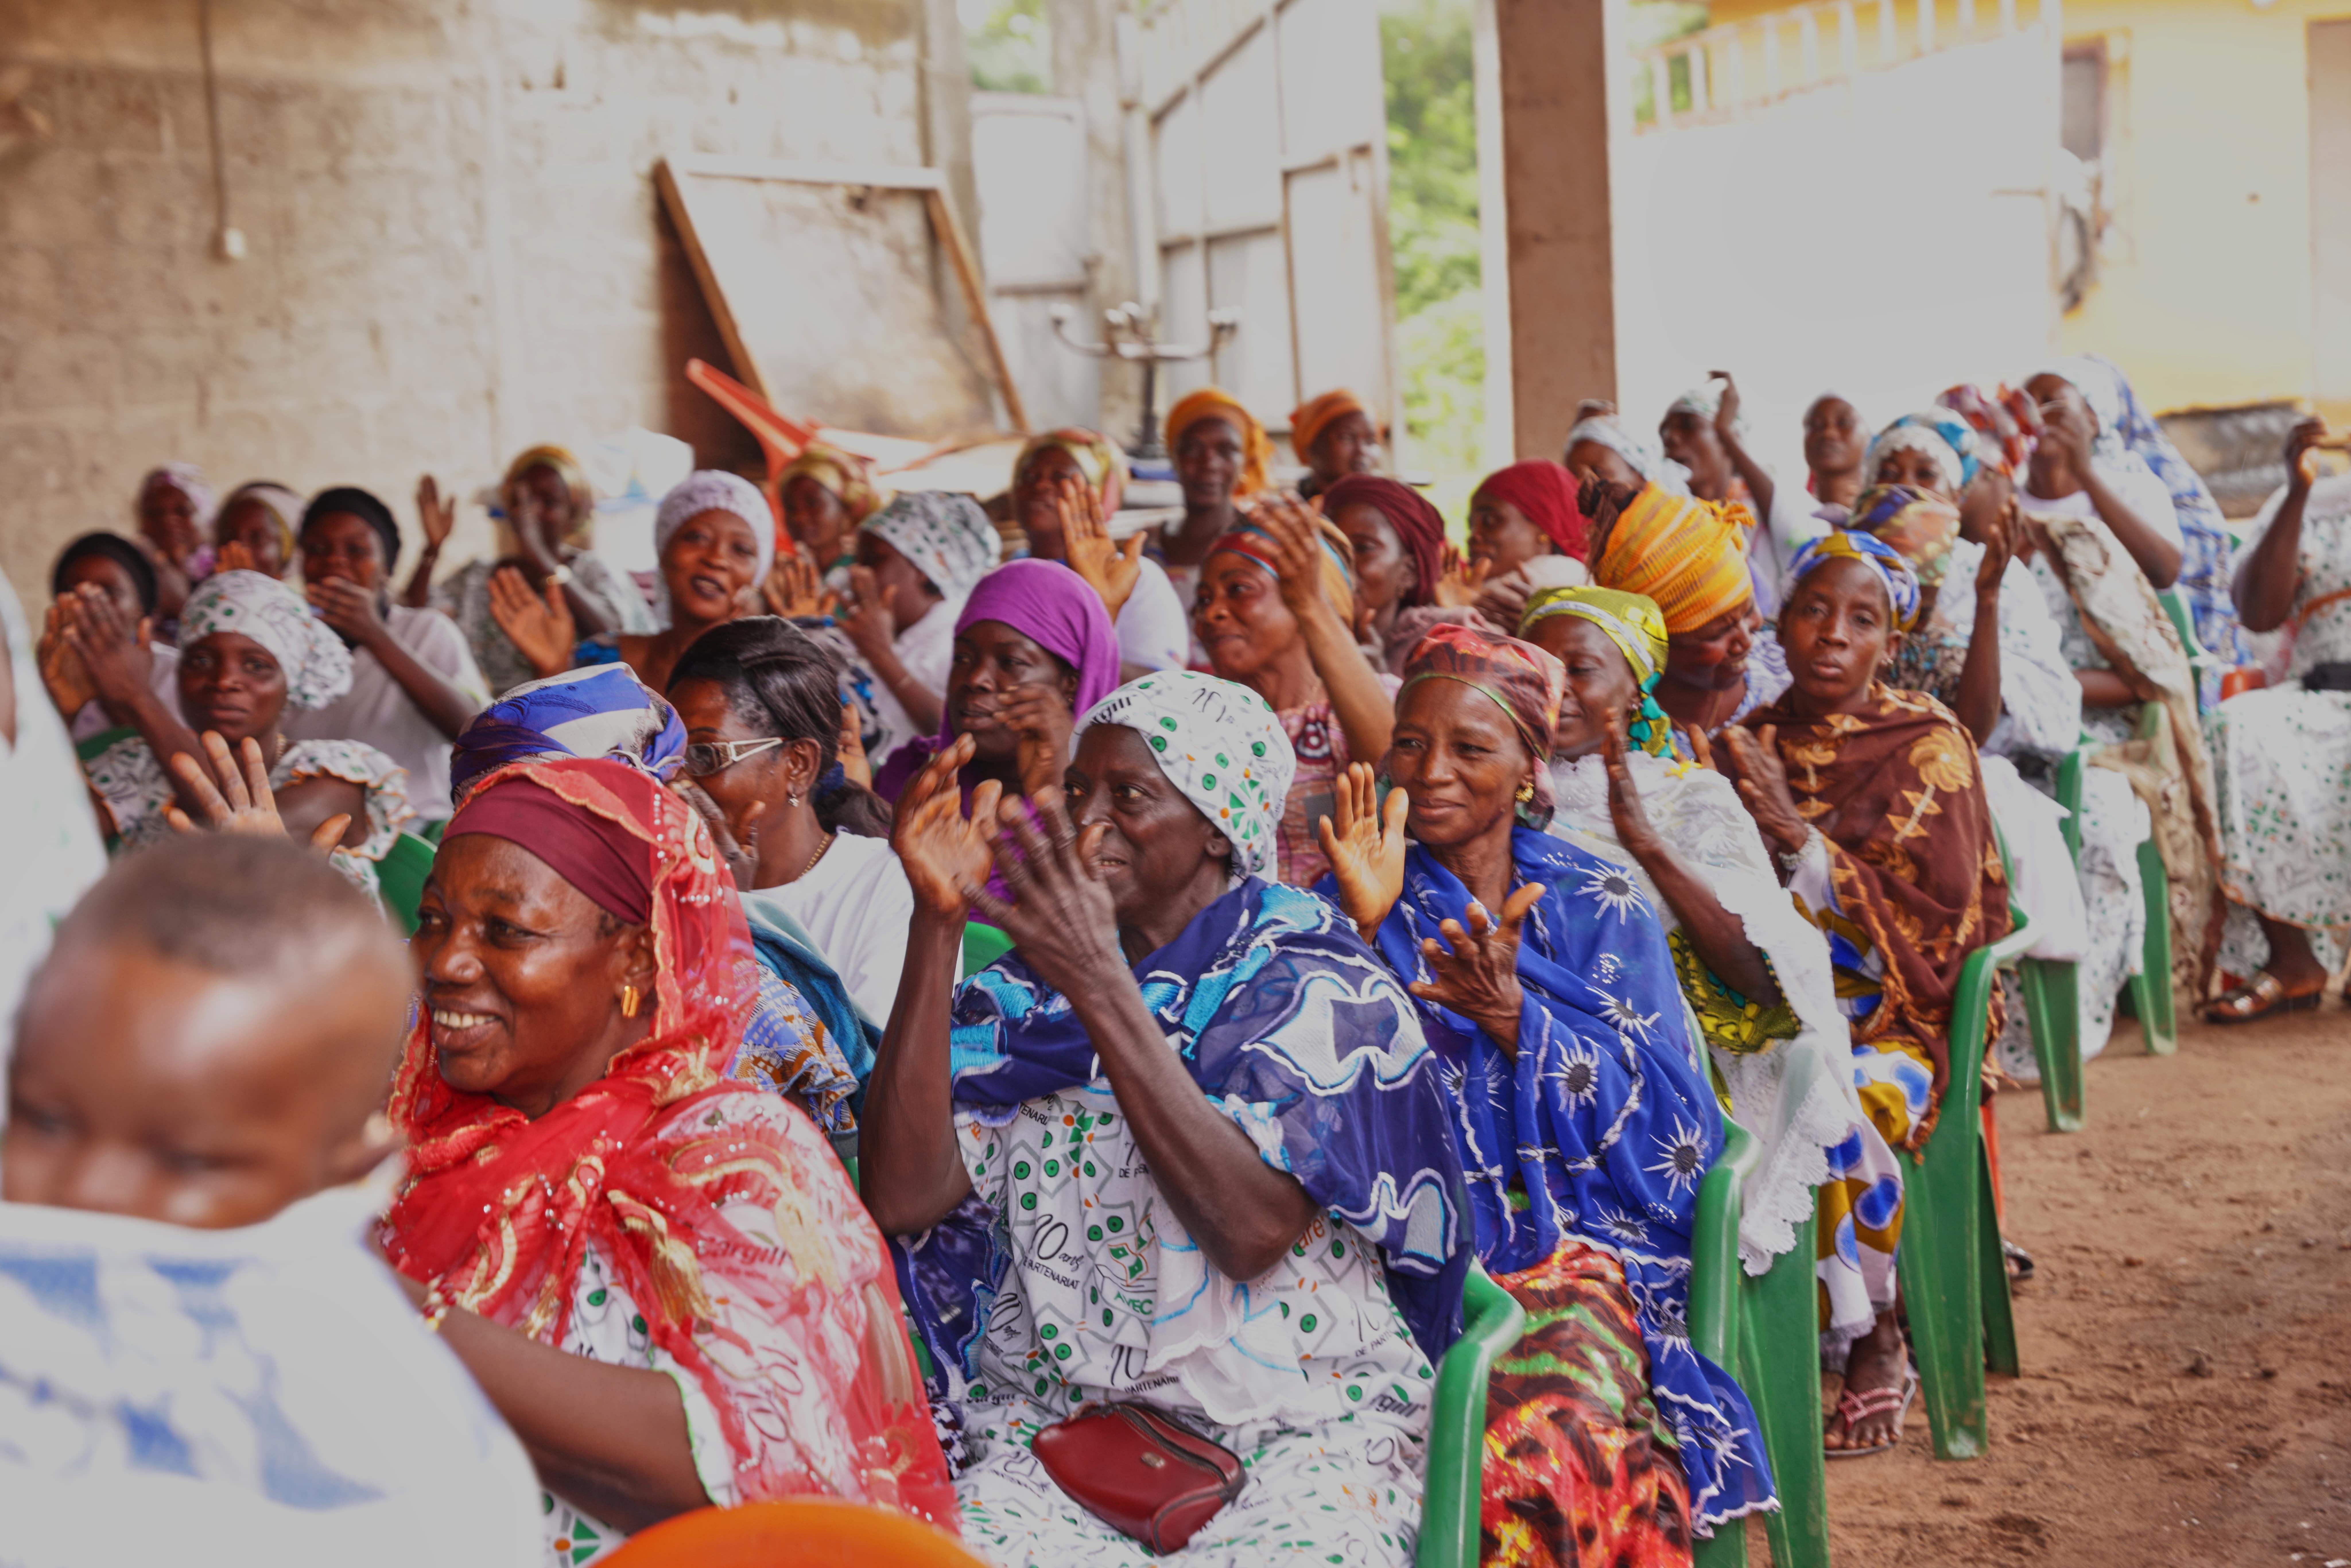 Magnum celebra el crecimiento de su programa "AWA" para empoderar financiera y socialmente a cientos de mujeres de Costa de Marfil